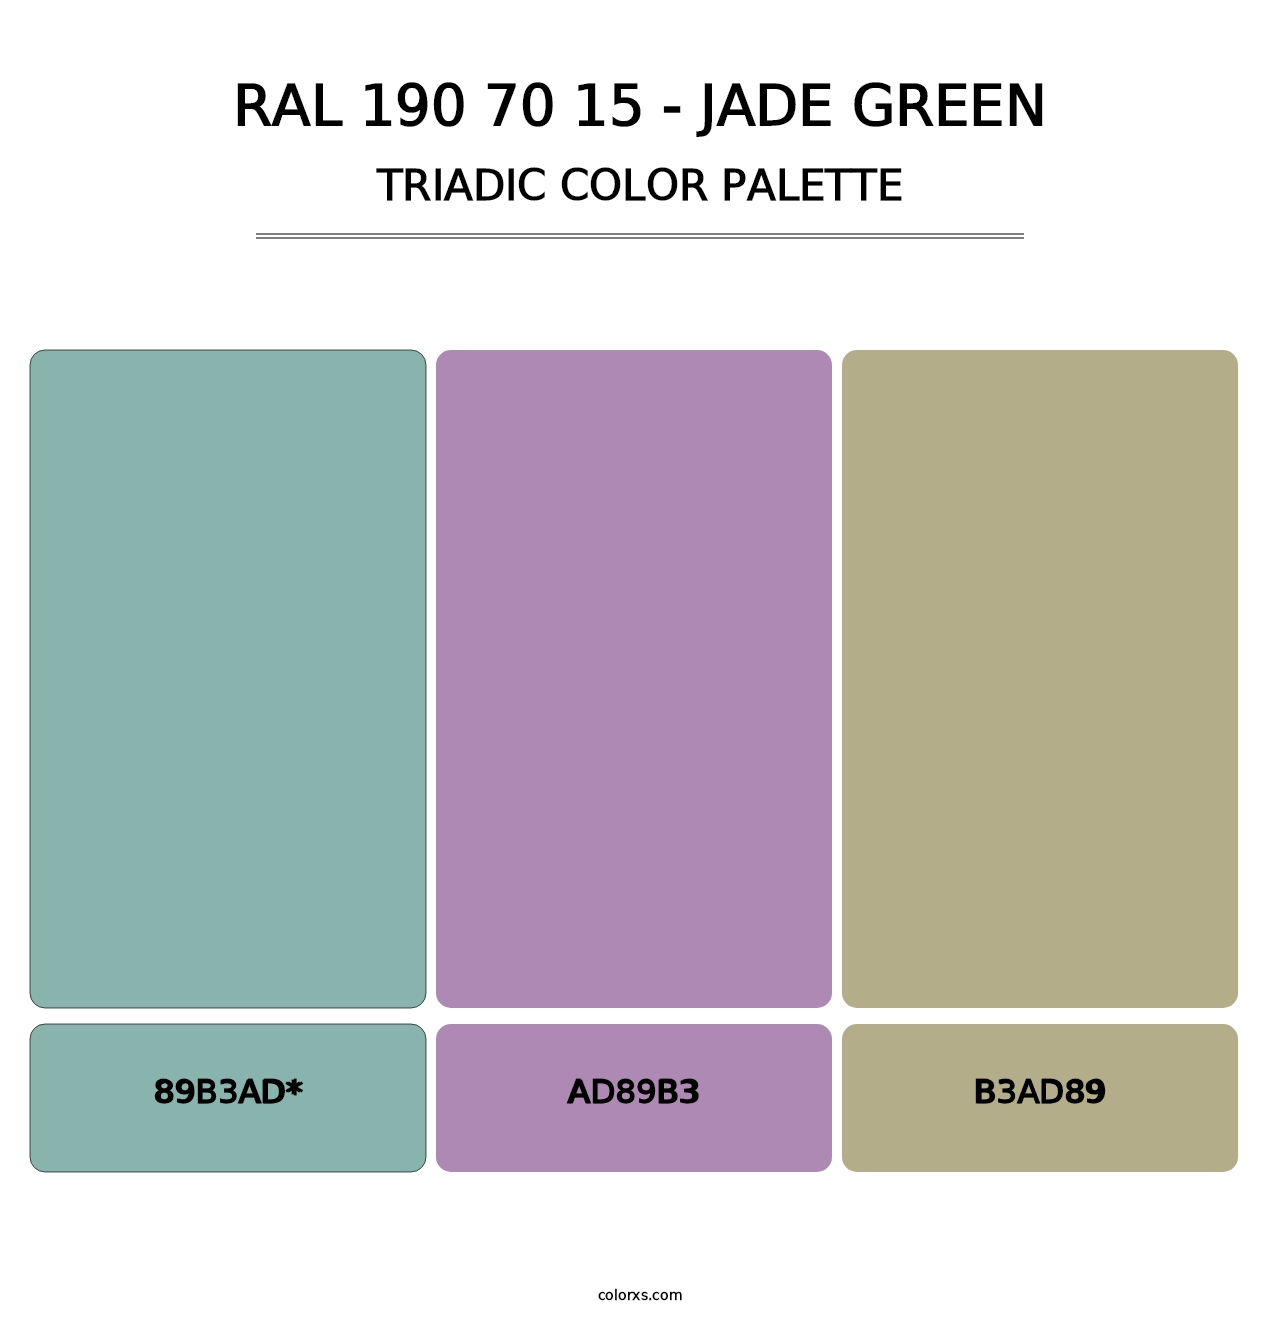 RAL 190 70 15 - Jade Green - Triadic Color Palette